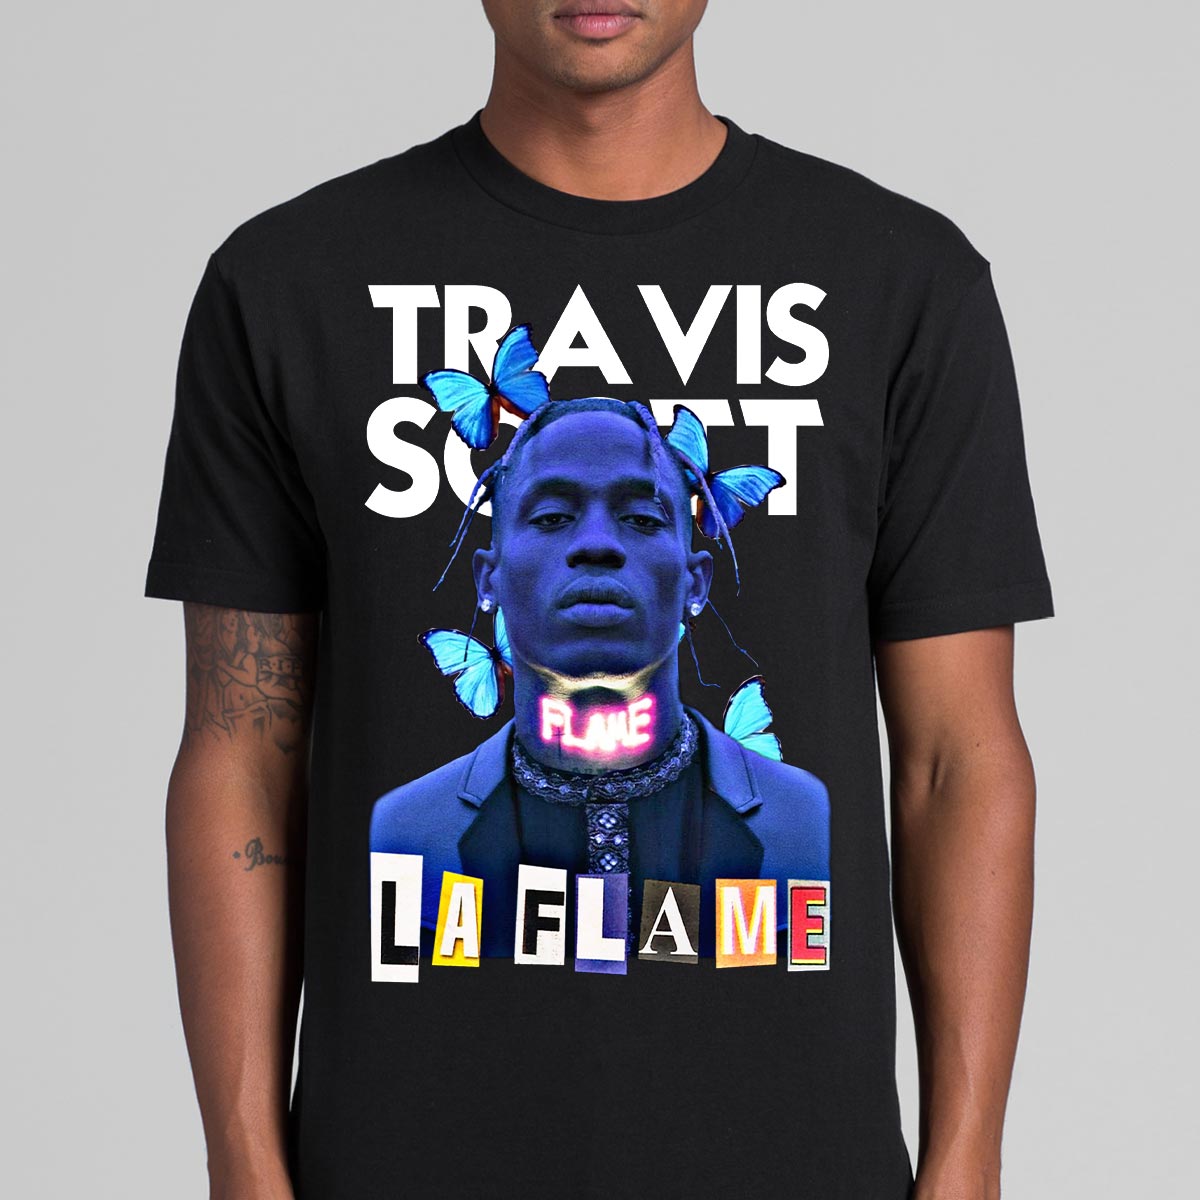 Travis Scott LA Flame T-Shirt Rapper Family Fan Music Hip Hop Culture